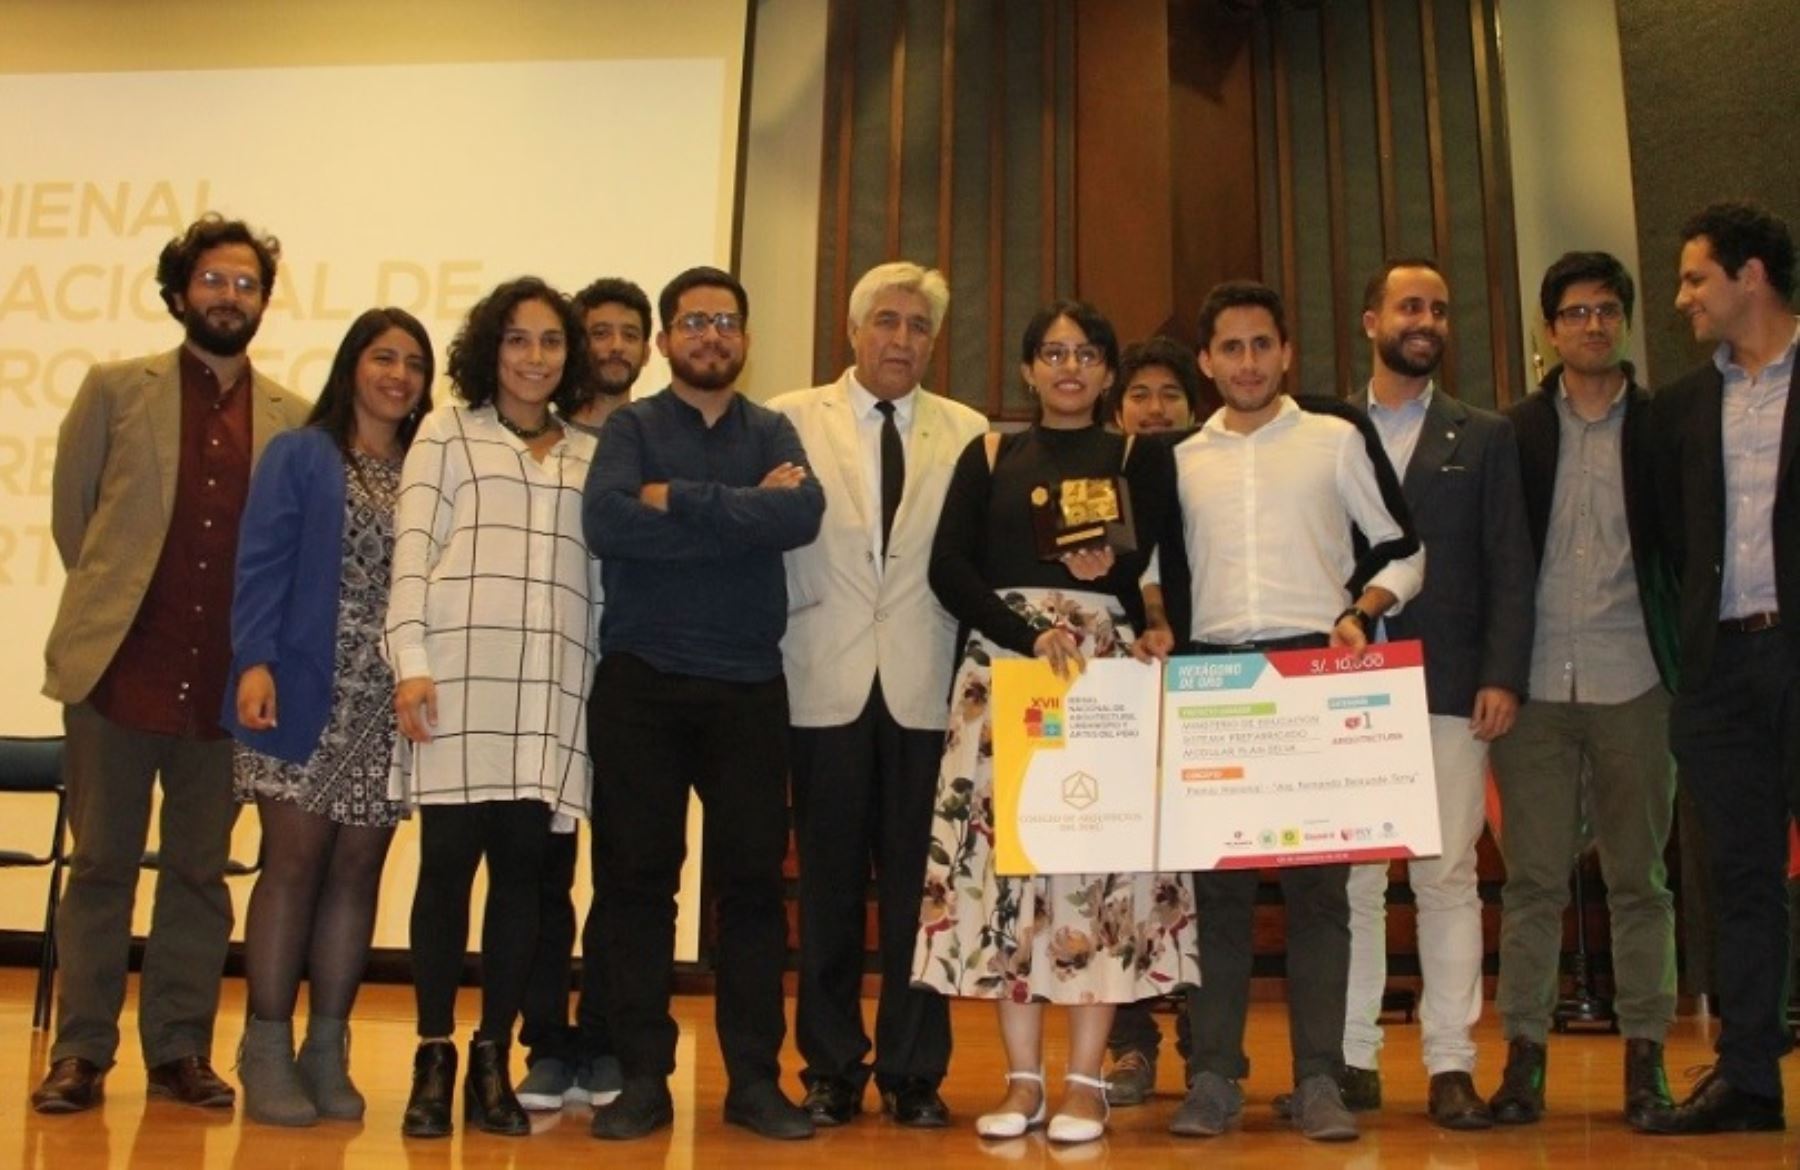 Arquitectos del Ministerio de Educación que trabajan en el Plan Selva, recibieron distinción del Colegio de Arquitectos del Perú en la XVII Bienal Nacional de Arquitectura, Urbanismo y Artes del Perú.